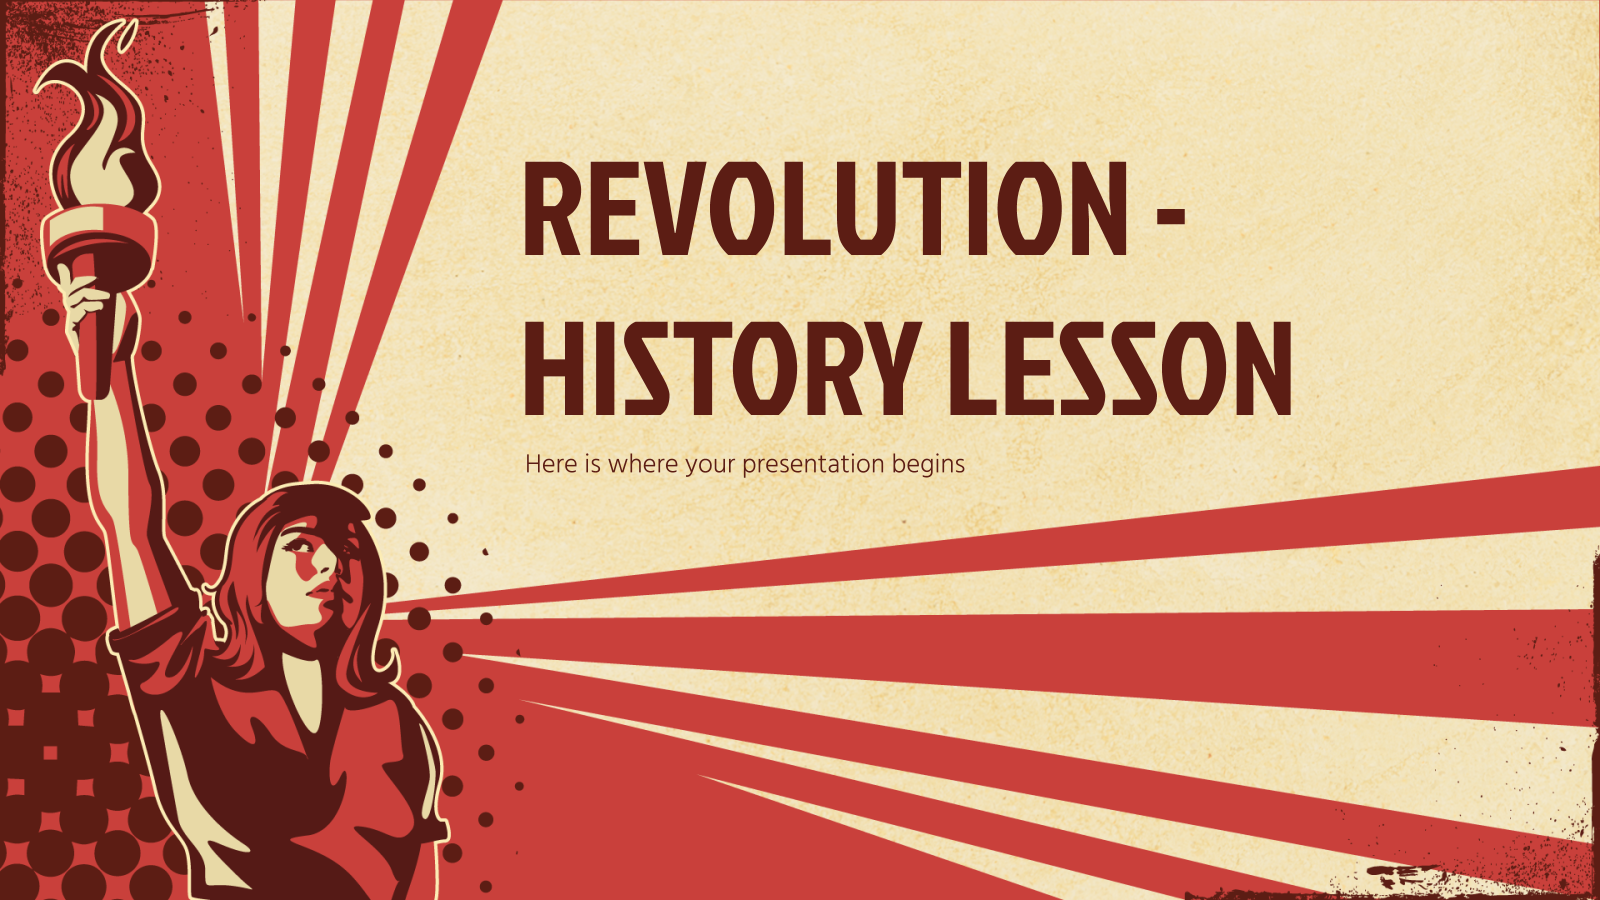 革命历史课PowerPoint模板